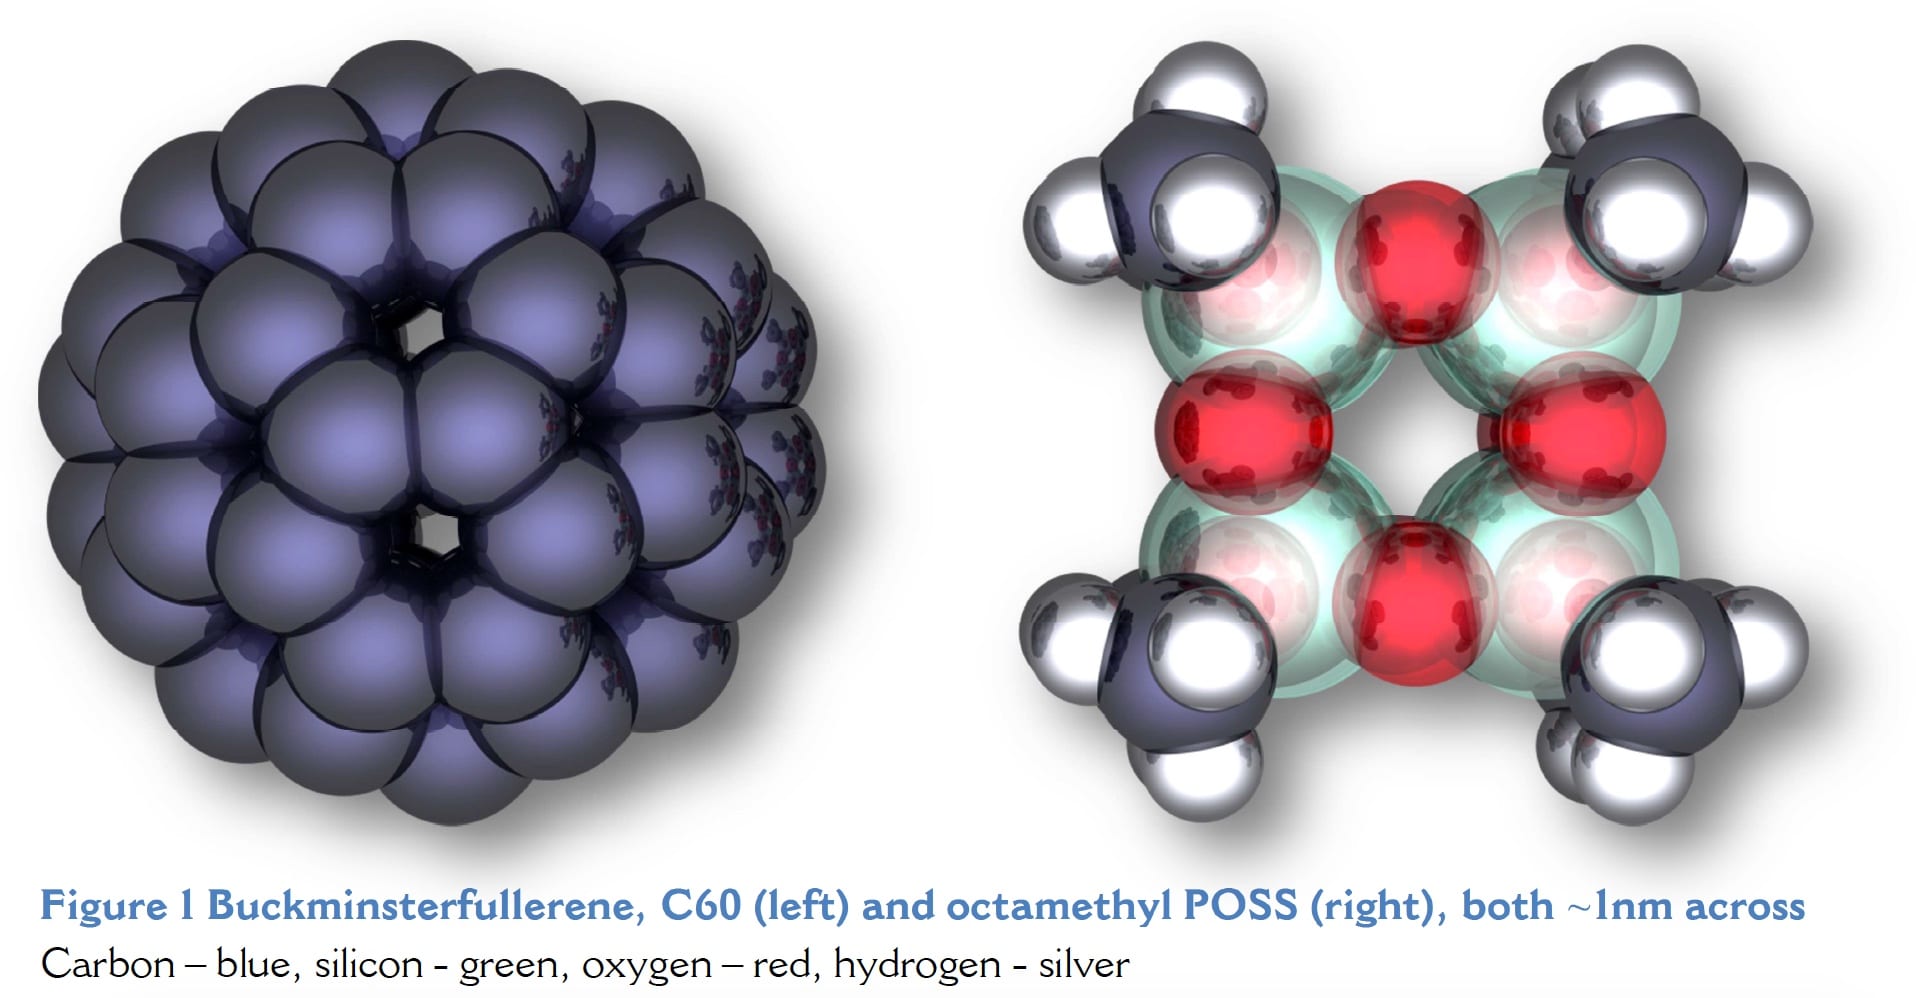 POSS Compared to C60 Buckminsterfullerene